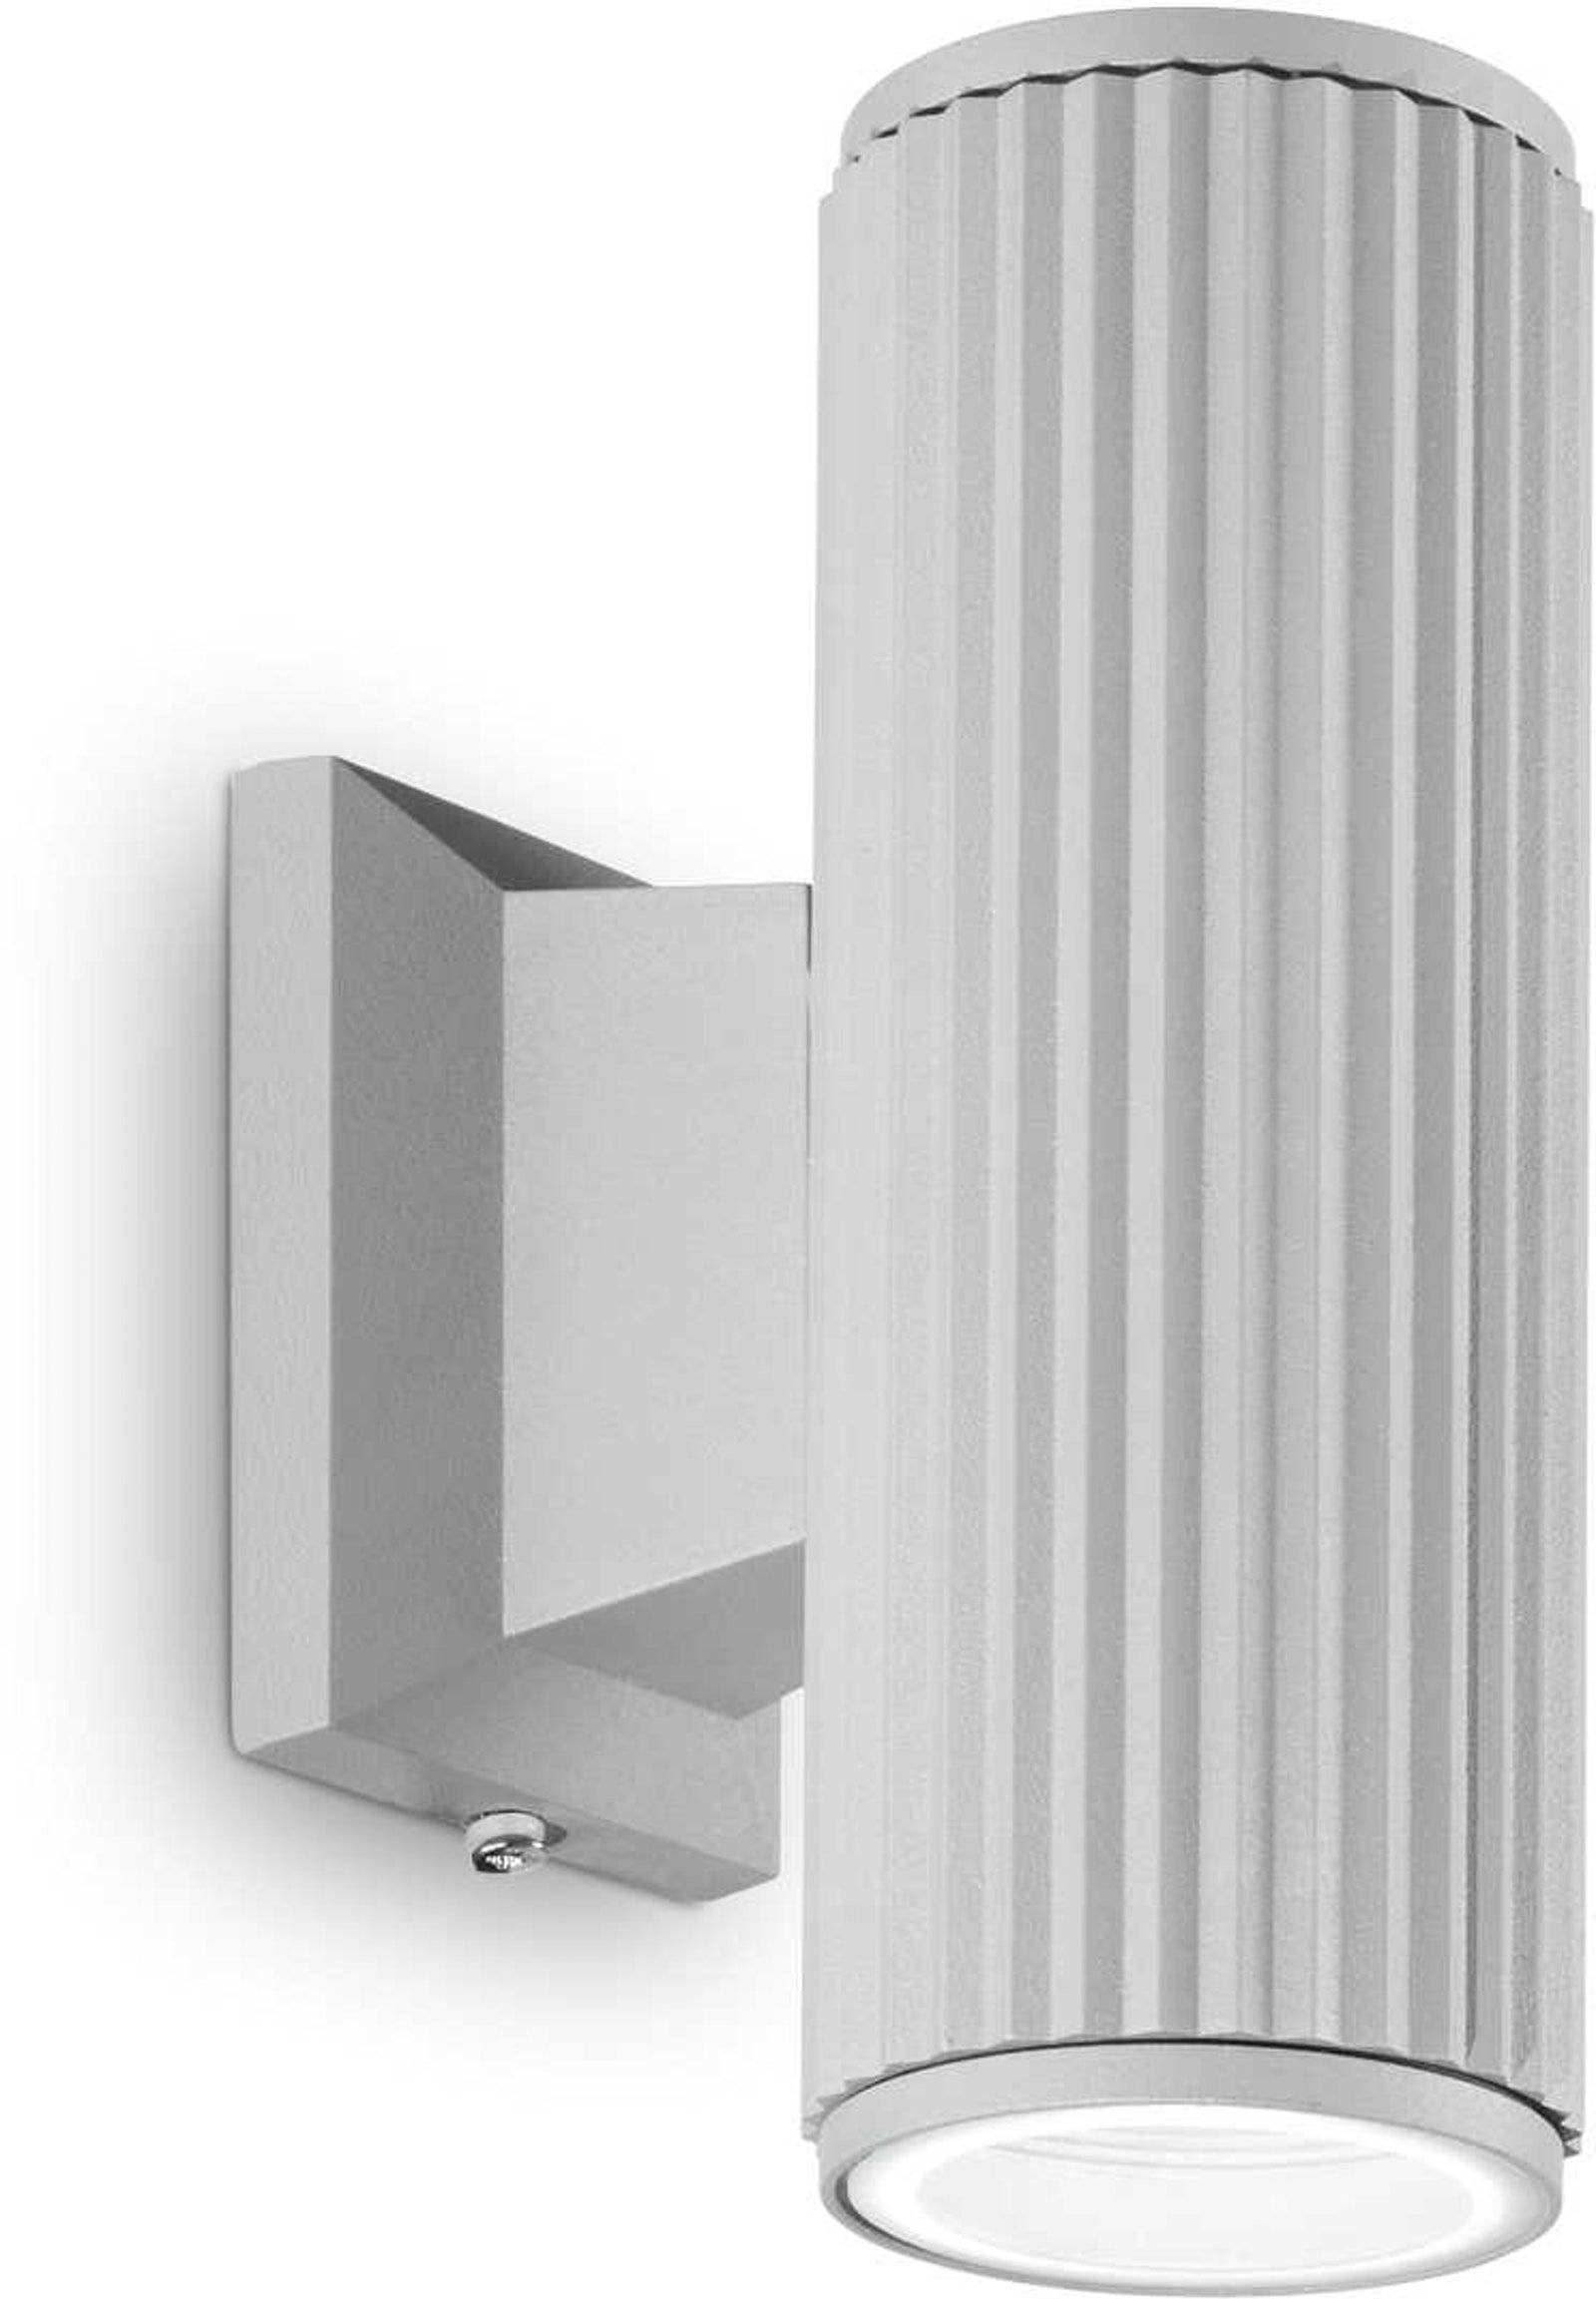 Billede af Base, Udendørs væglampe, Ap2, aluminium by Ideal Lux (H: 18 cm. x B: 11 cm. x L: 6 cm., Grå)